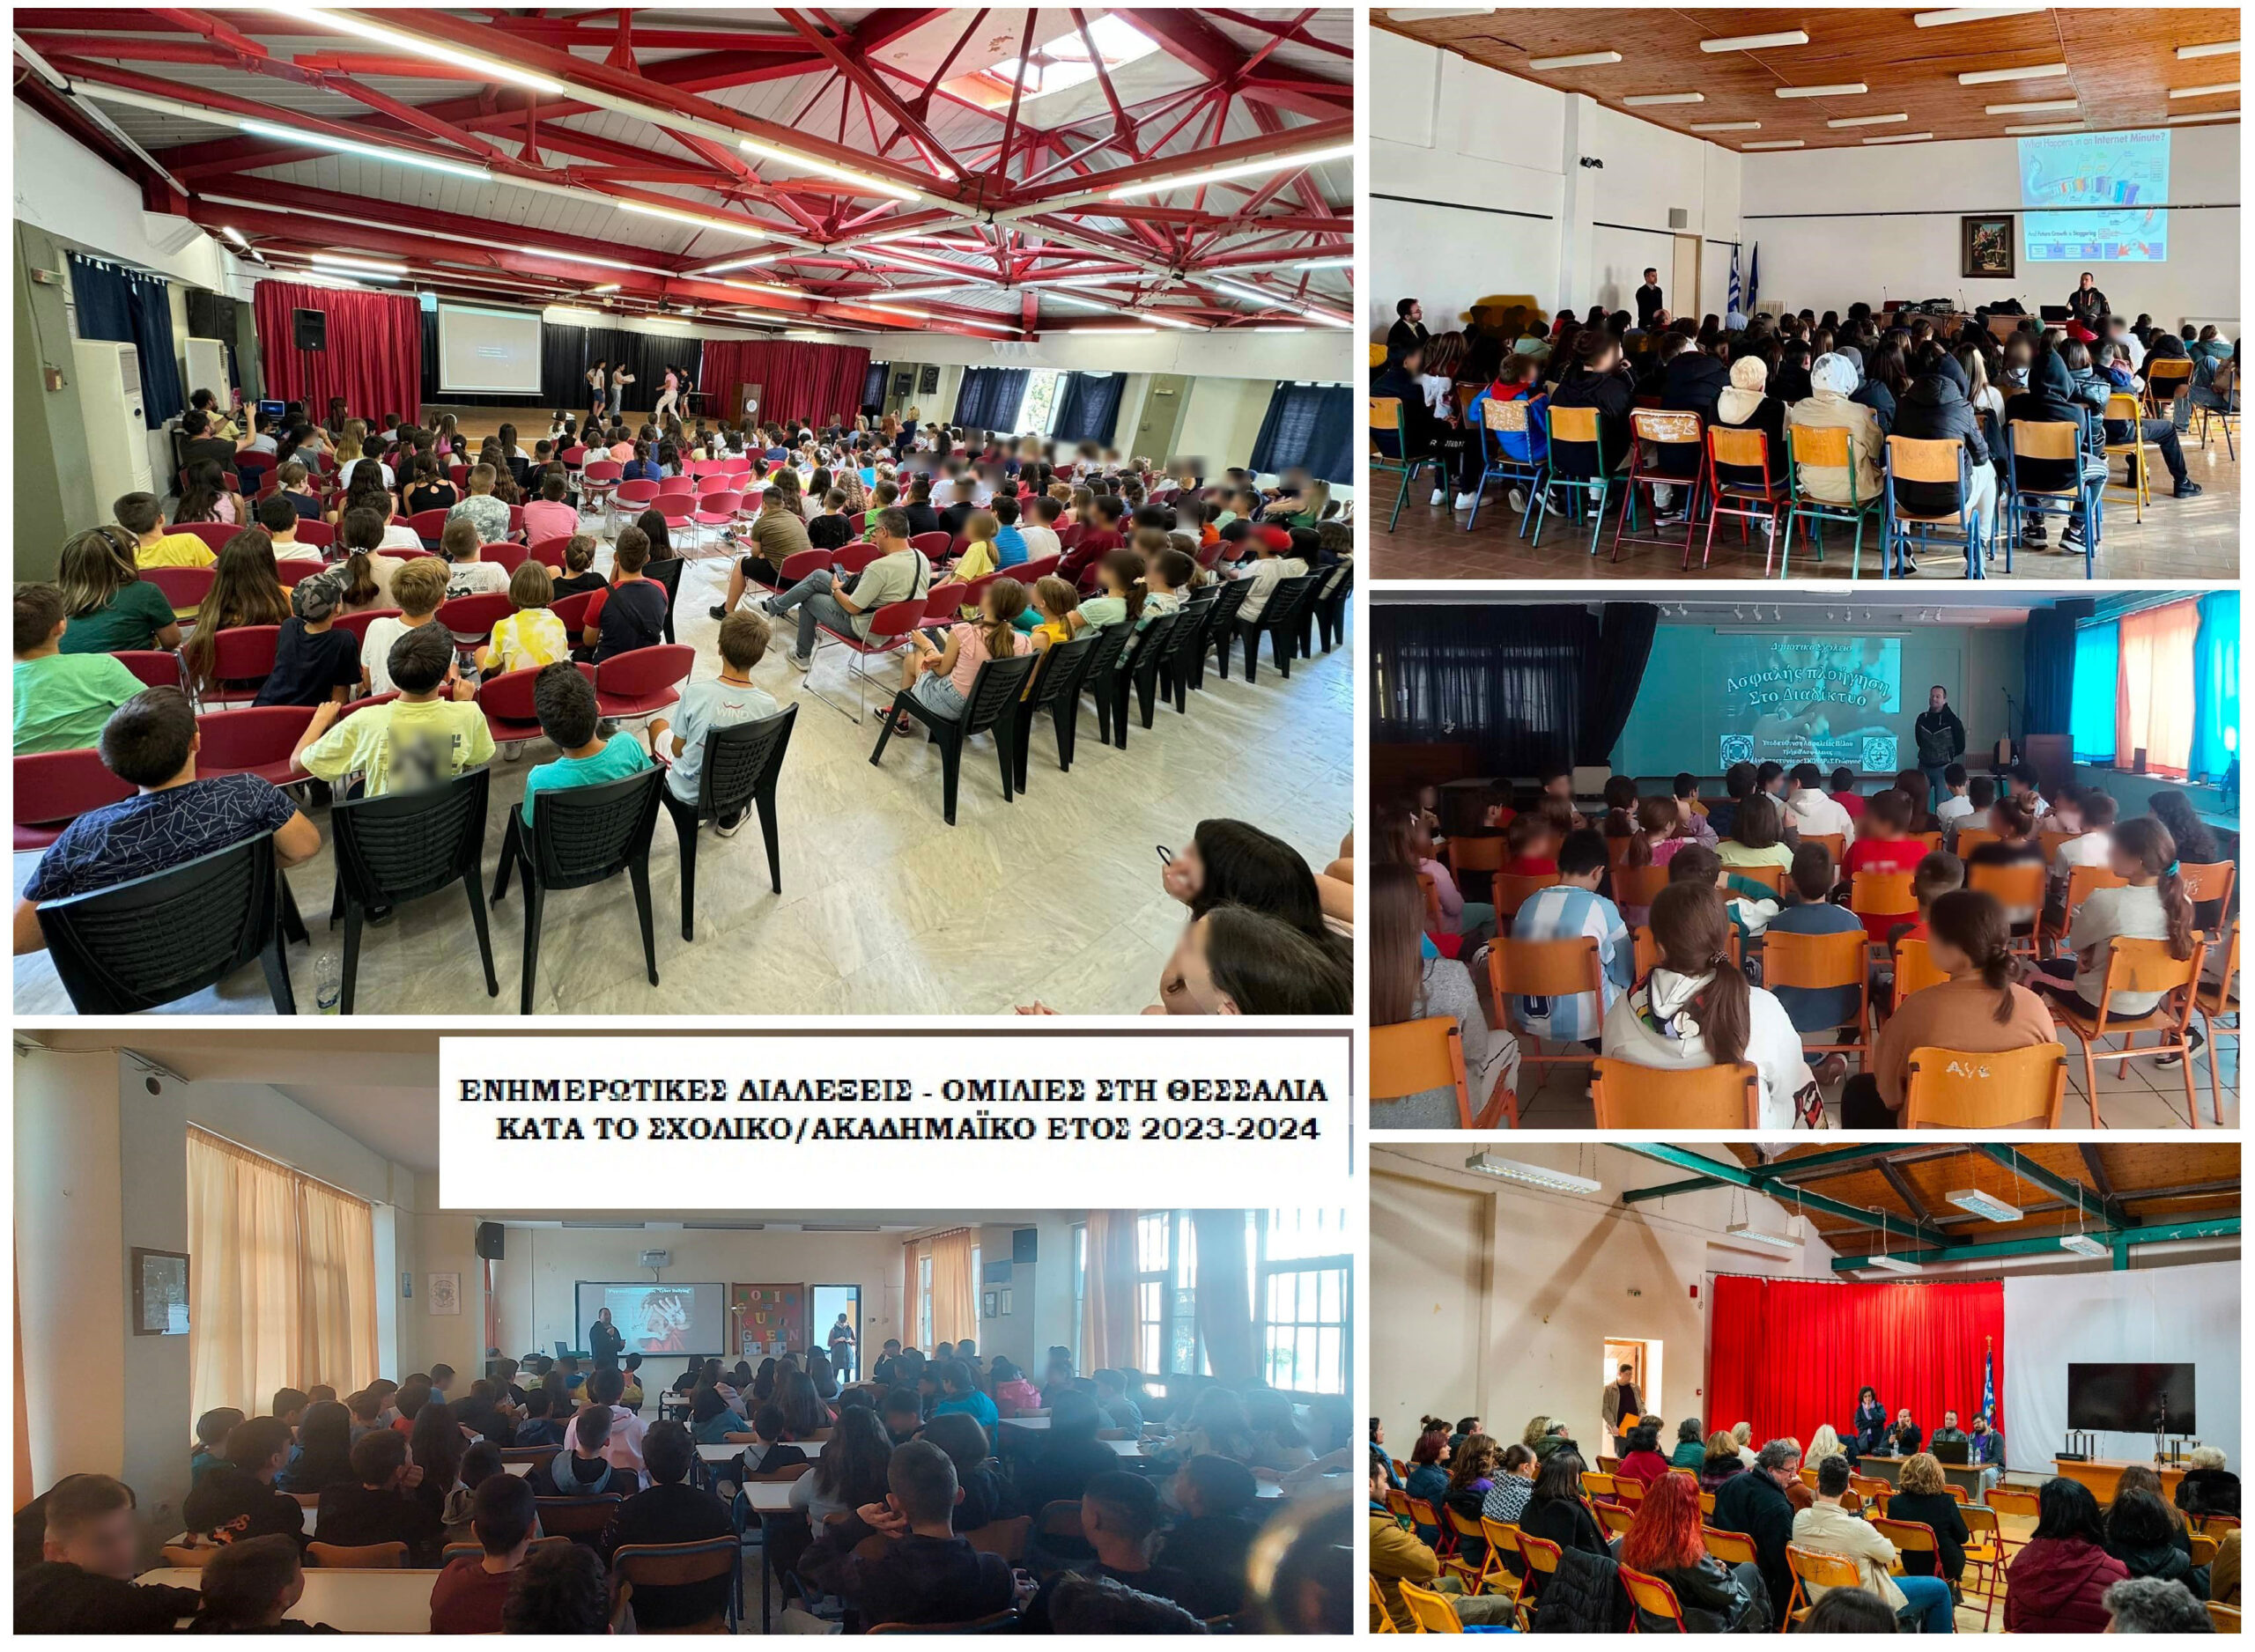 Θεσσαλία: 380 ενημερωτικές διαλέξεις από την ΕΛ.ΑΣ σε σχολεία για τη βία, το διαδίκτυο, την οδήγηση